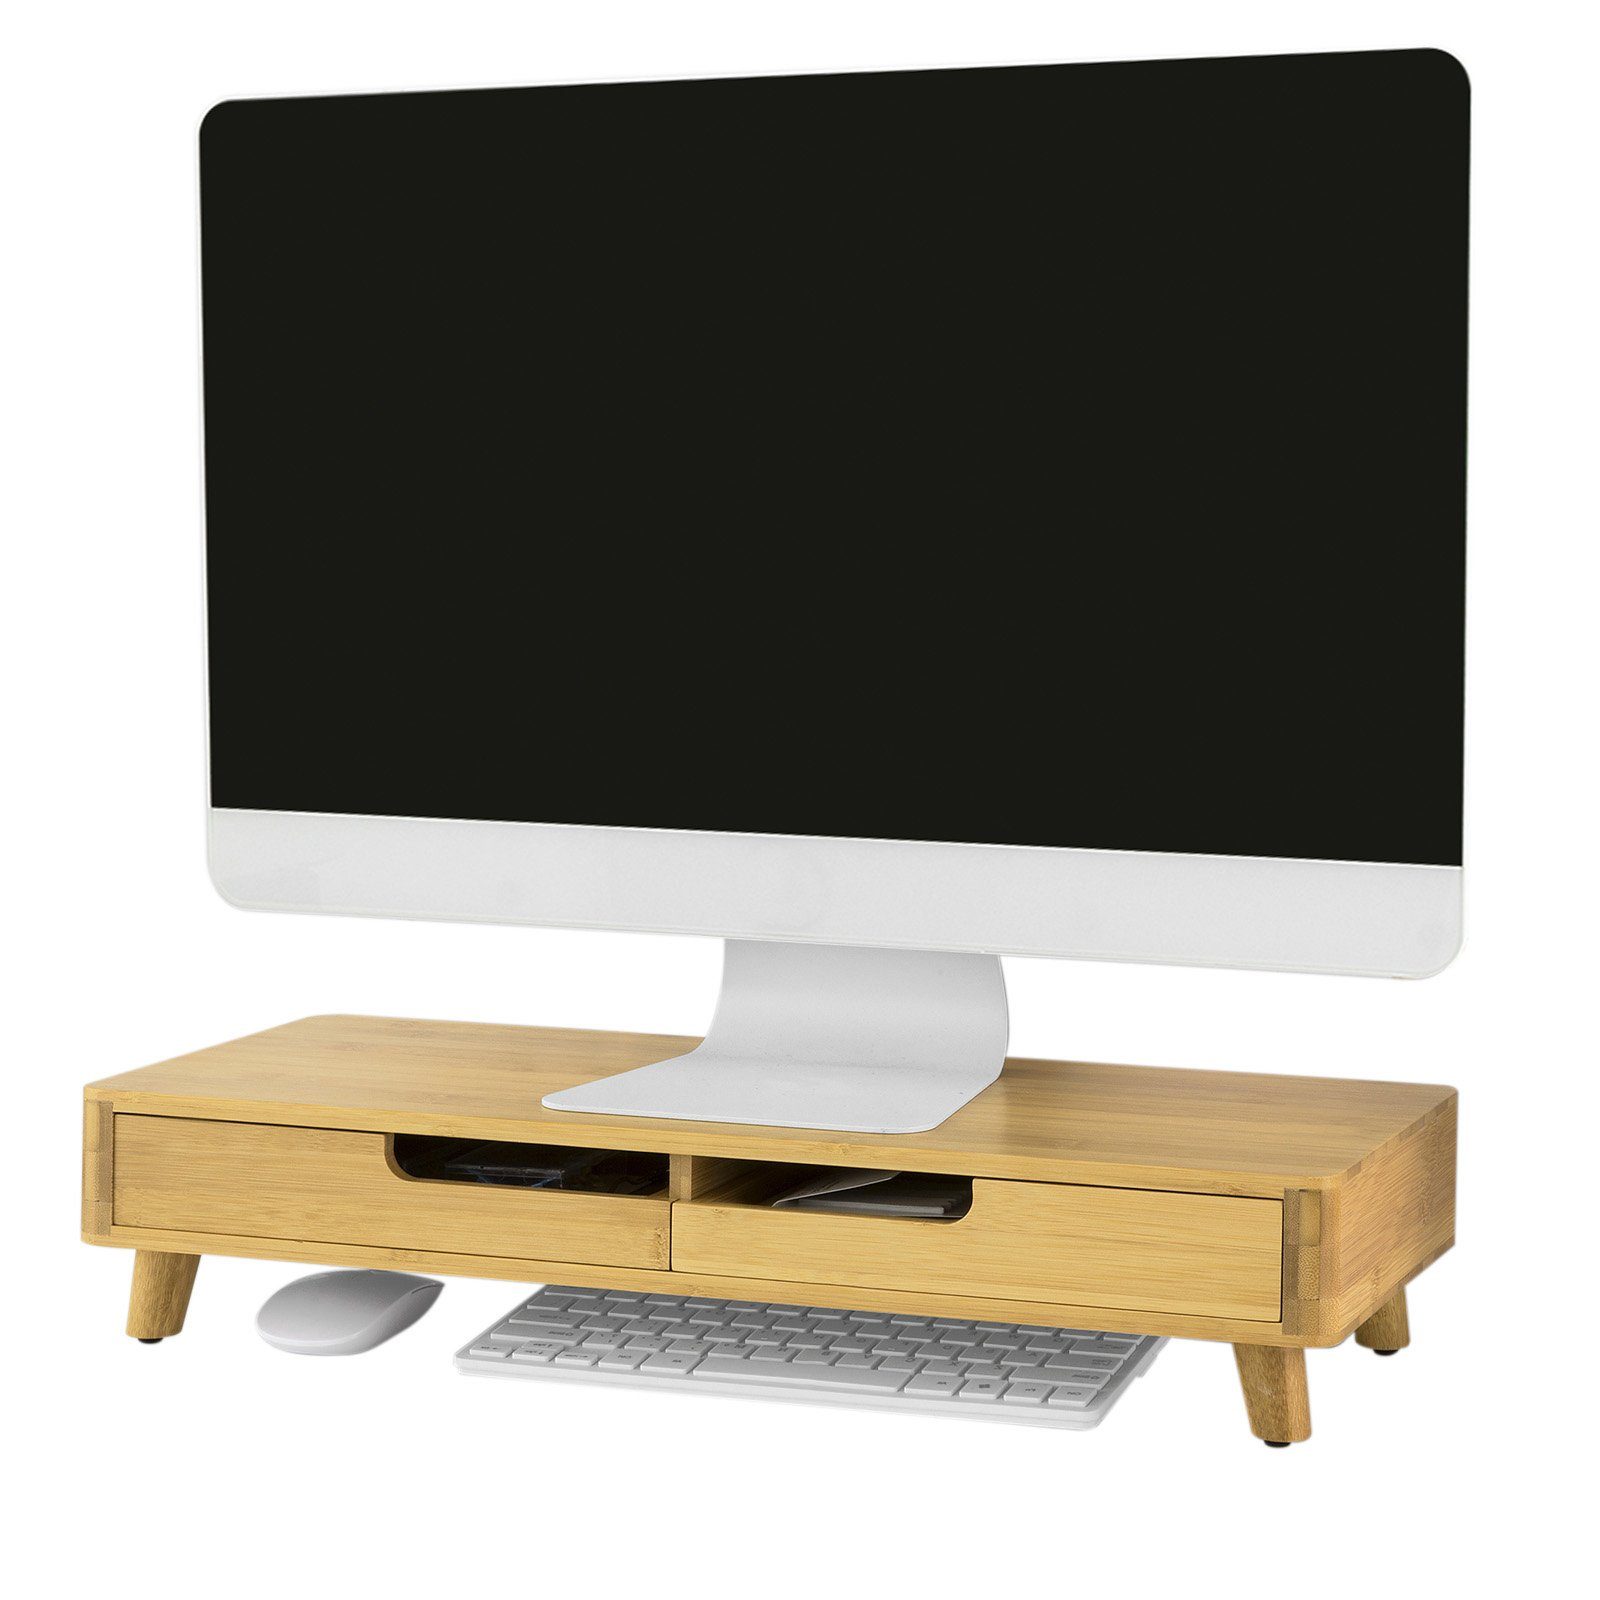 Monitorerhöhung Bildschirmerhöhung Schreibtischregal Bildschirm Aufsatz Ständer 